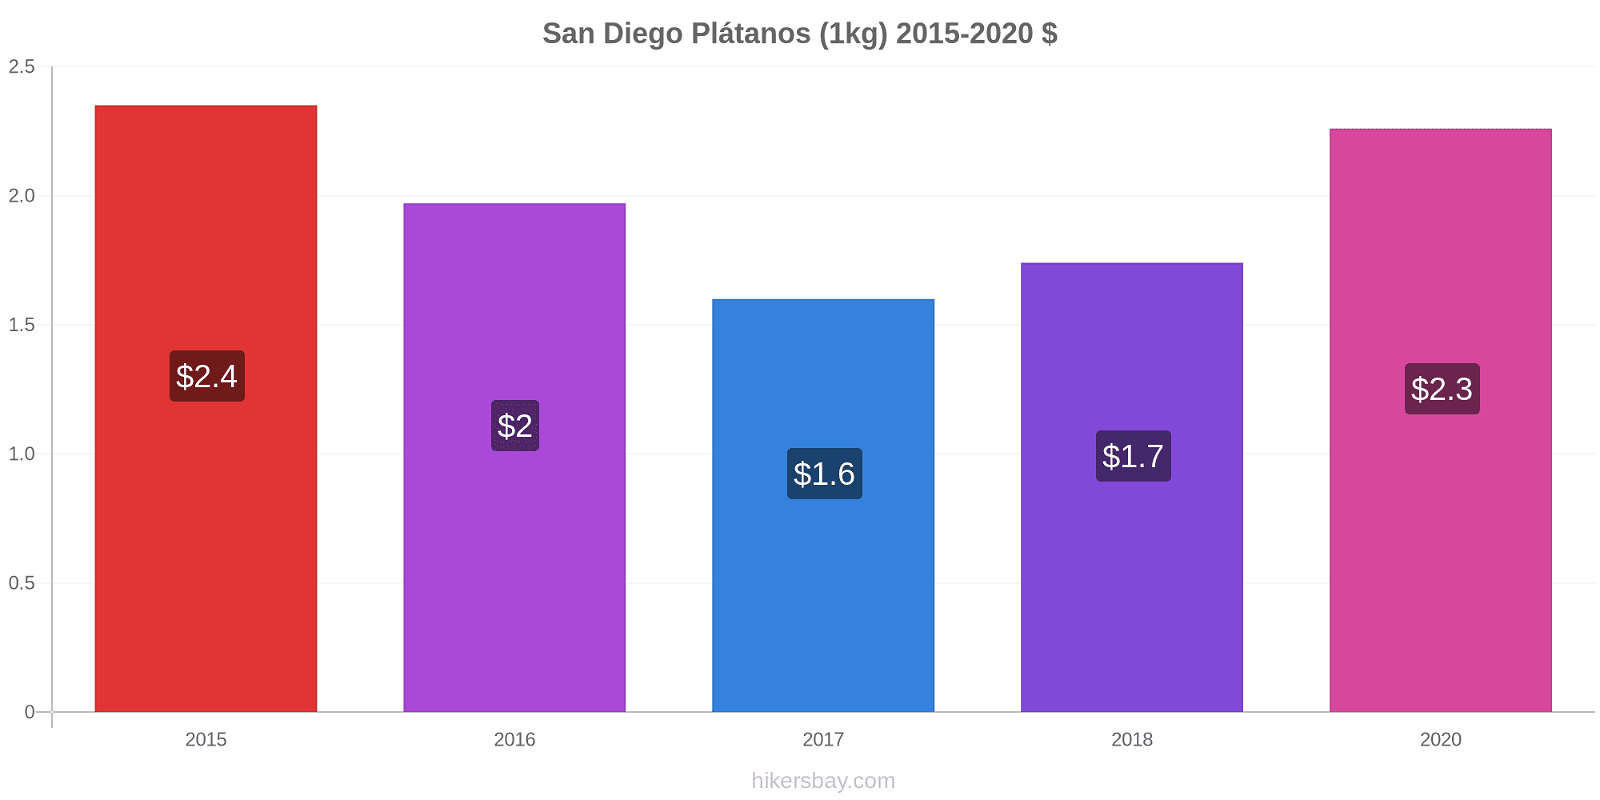 San Diego cambios de precios Plátano (1kg) hikersbay.com